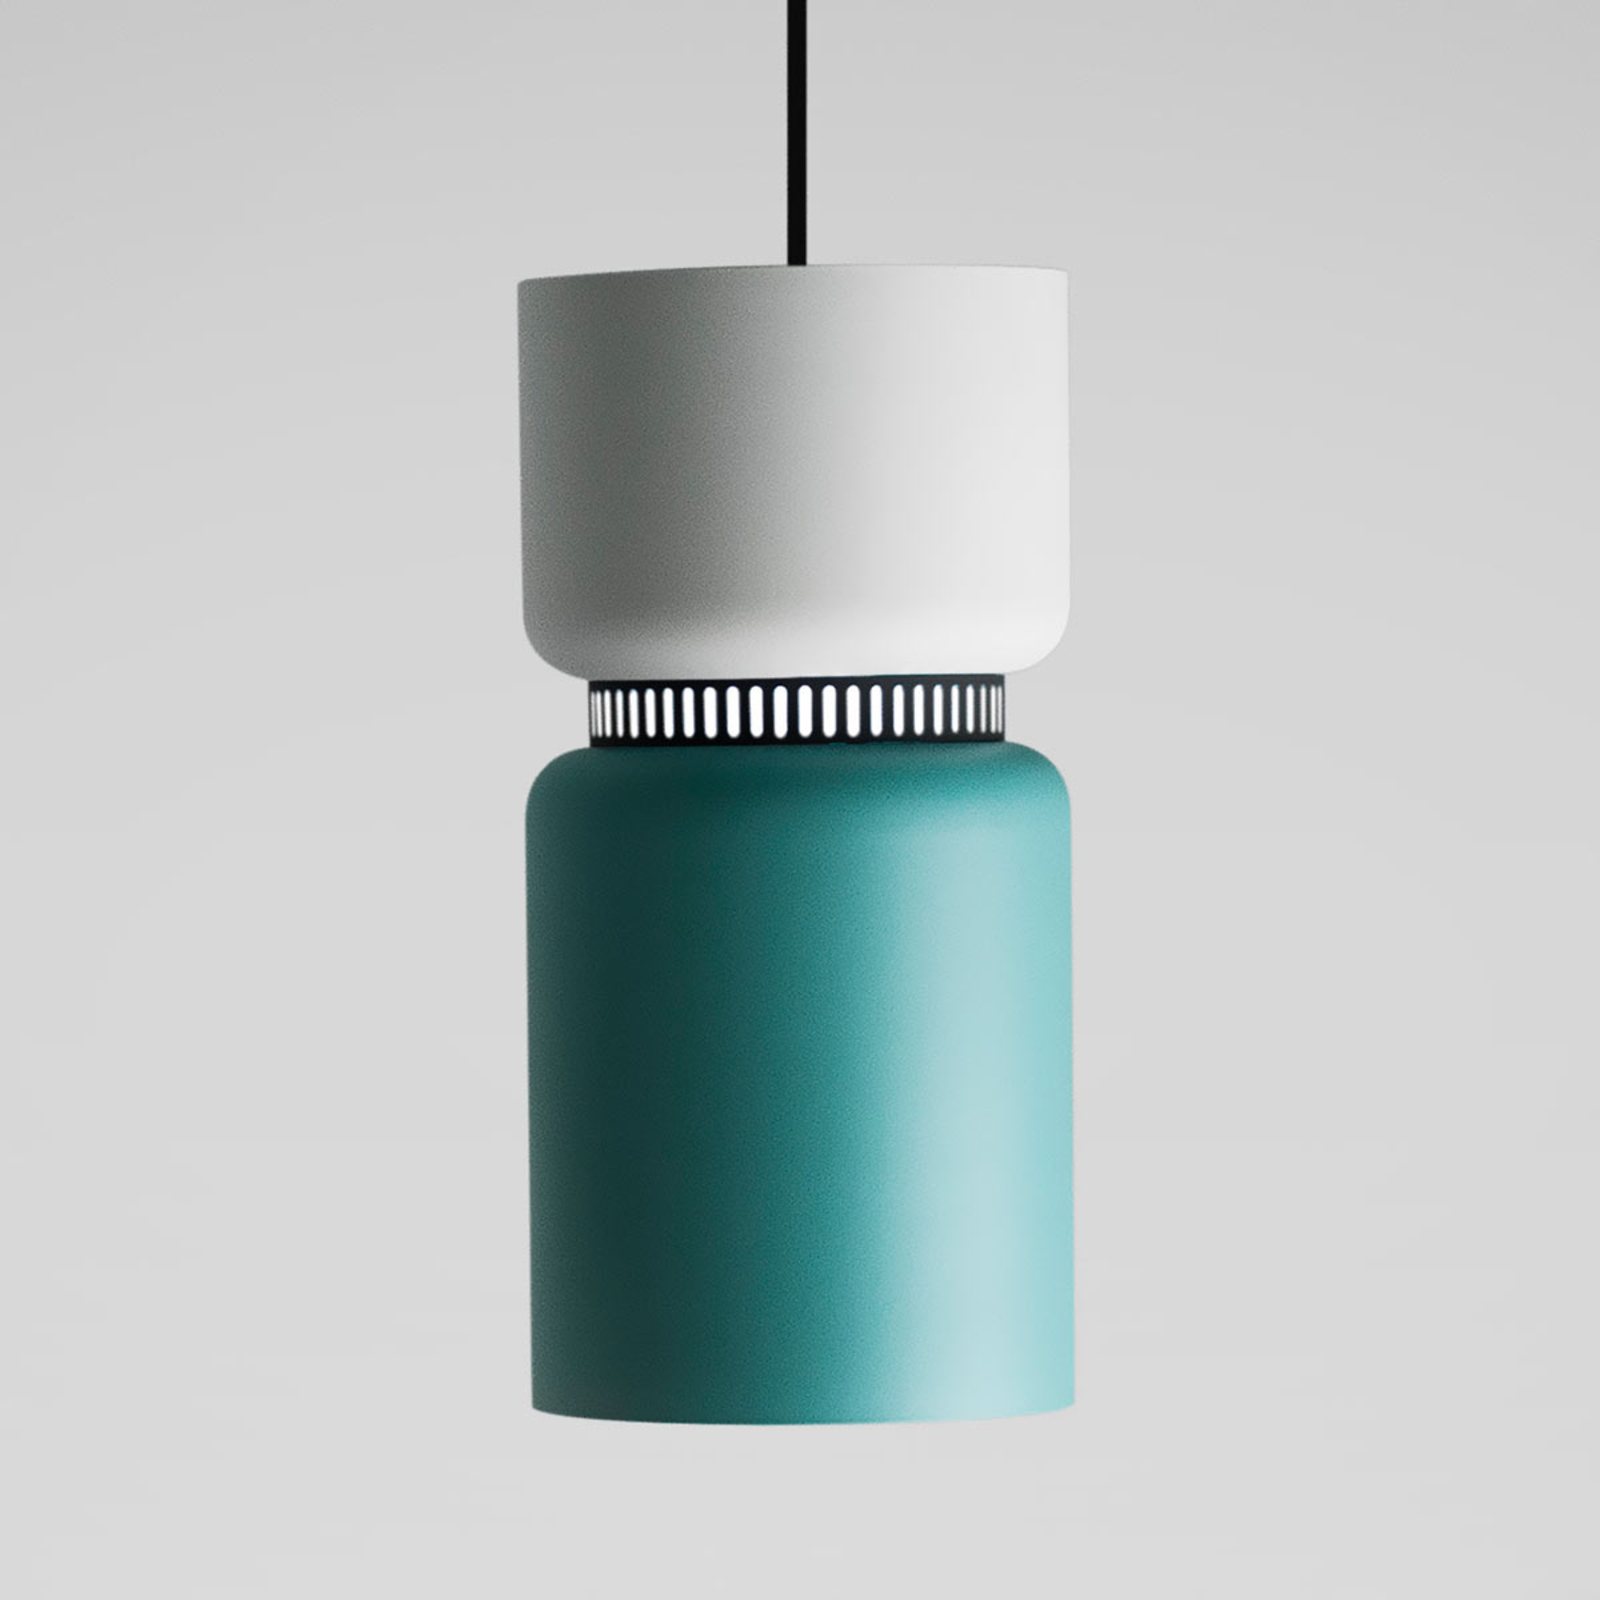 LED pendant light Aspen S white-turquoise 17cm short